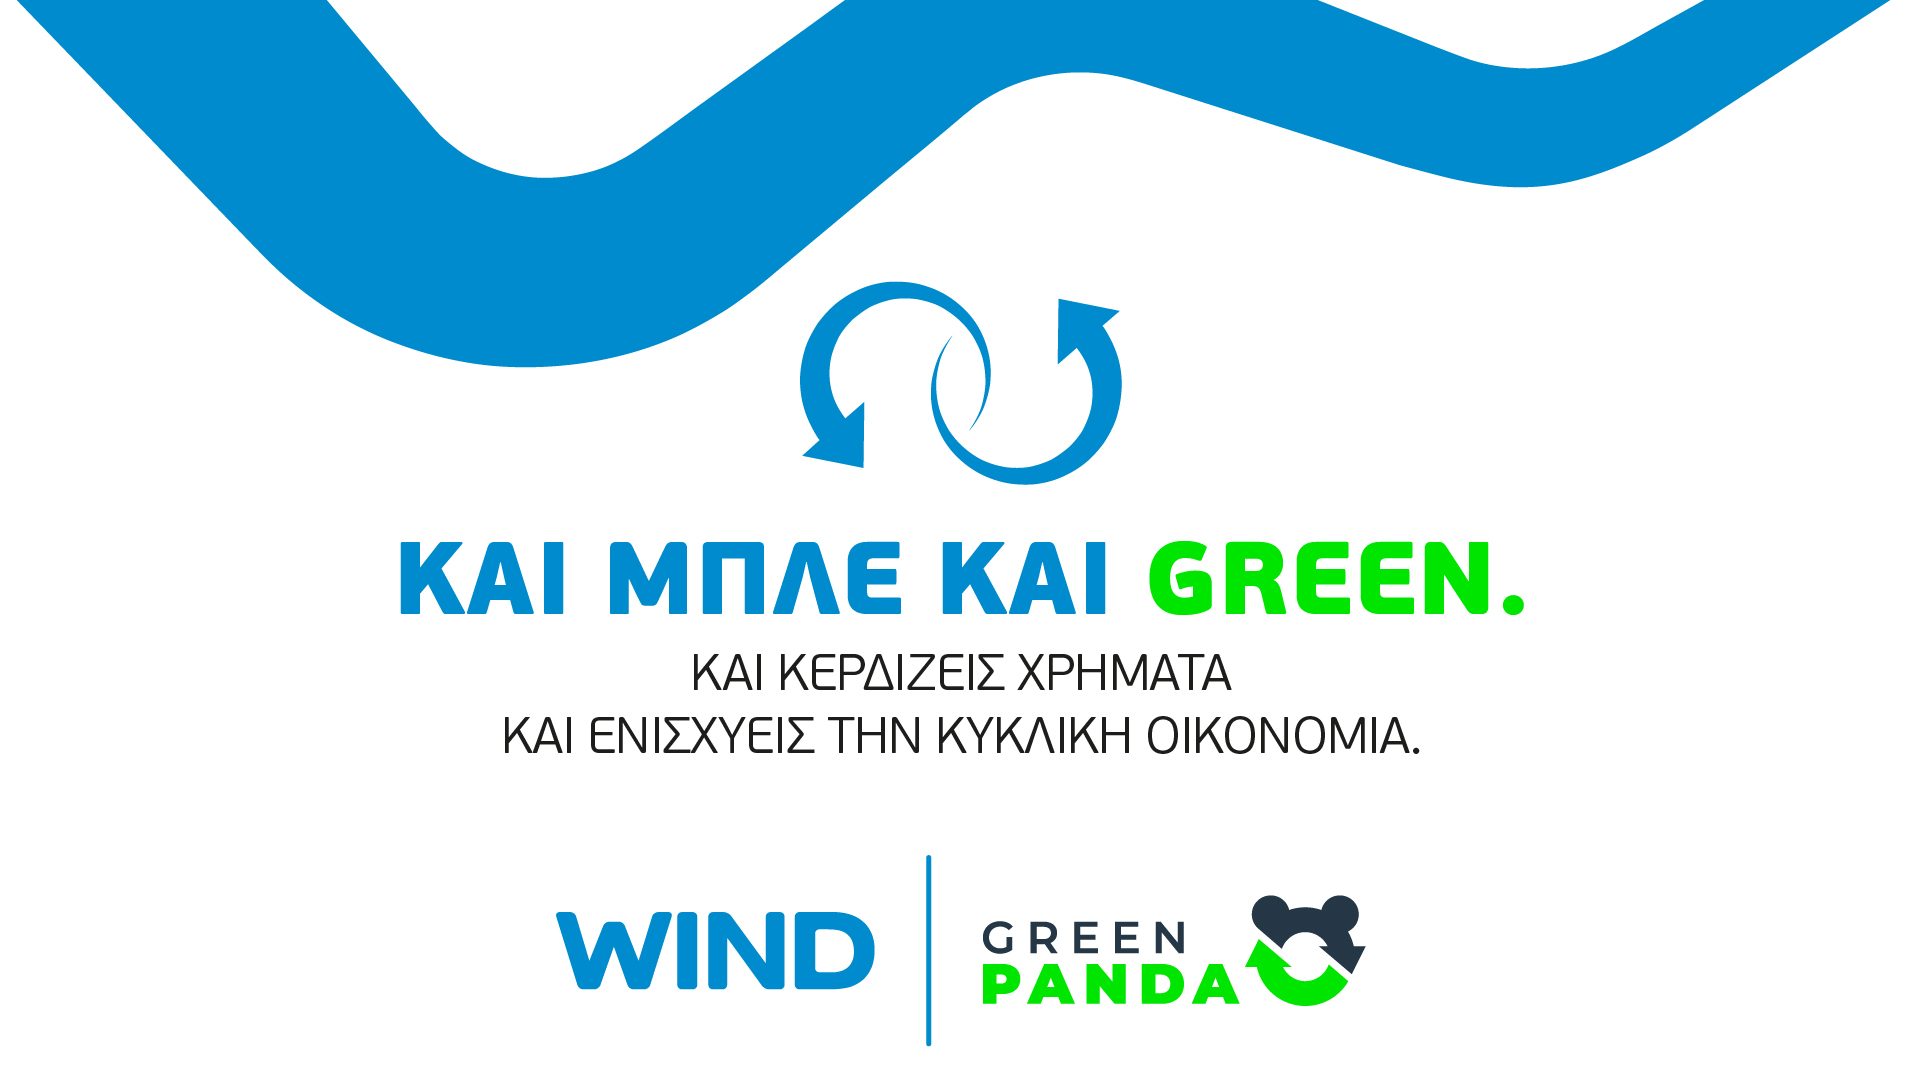 Η WIND Ελλάς συνεργάζεται με την GREEN PANDA και συμβάλλει στην κυκλική οικονομία